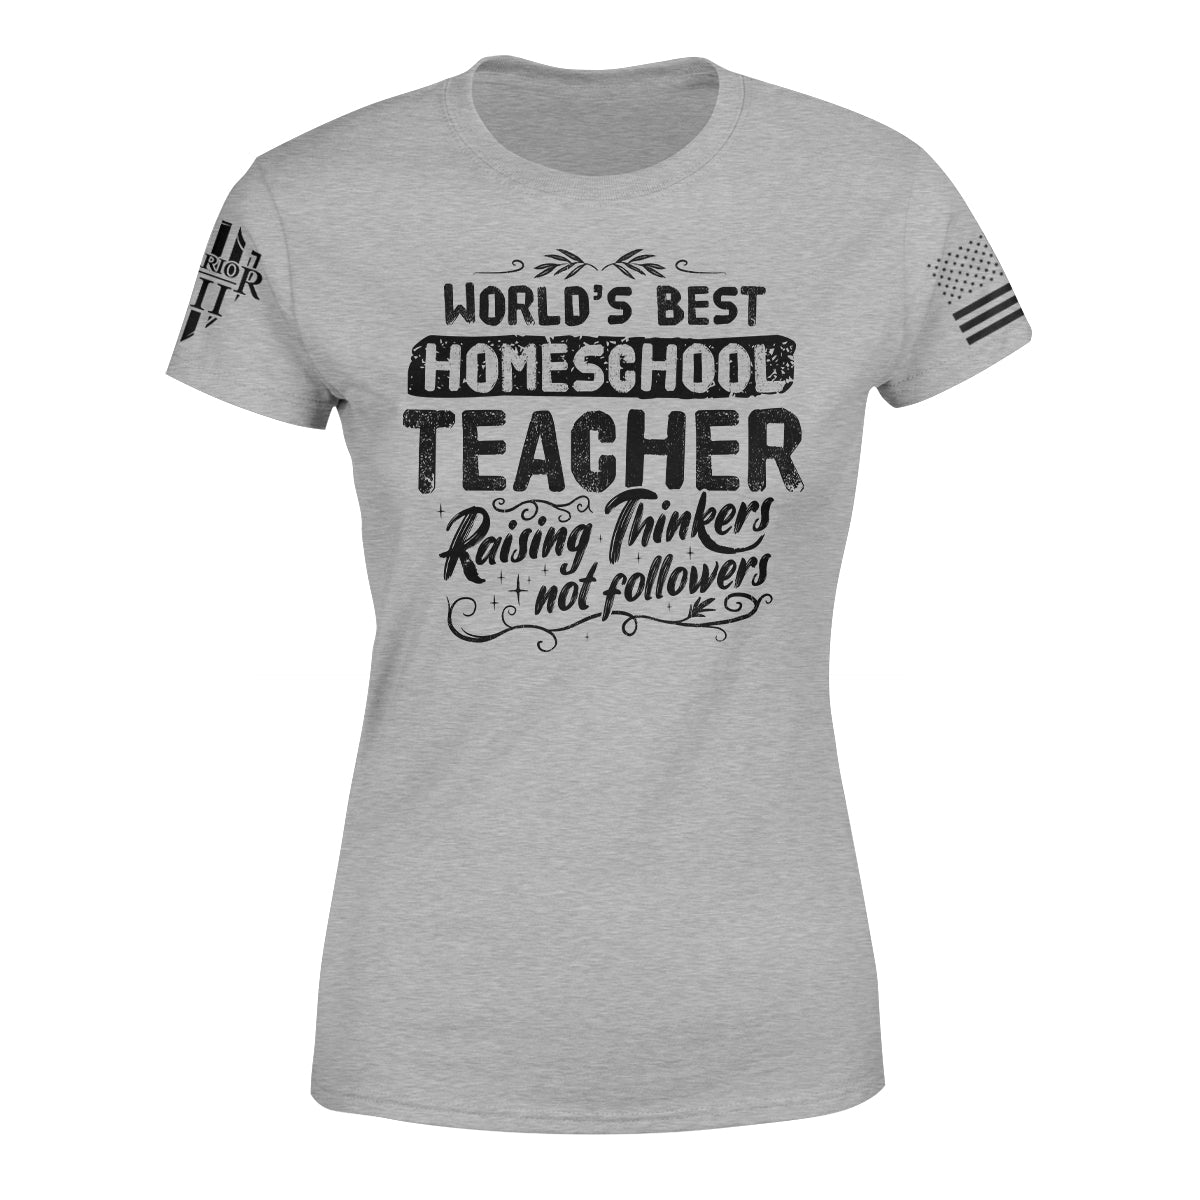 Warrior 12's Women's short sleeve grey shirt with the words 'World's Best Homeschool Teacher Raising Thinks Not Followers' Text is written in black.